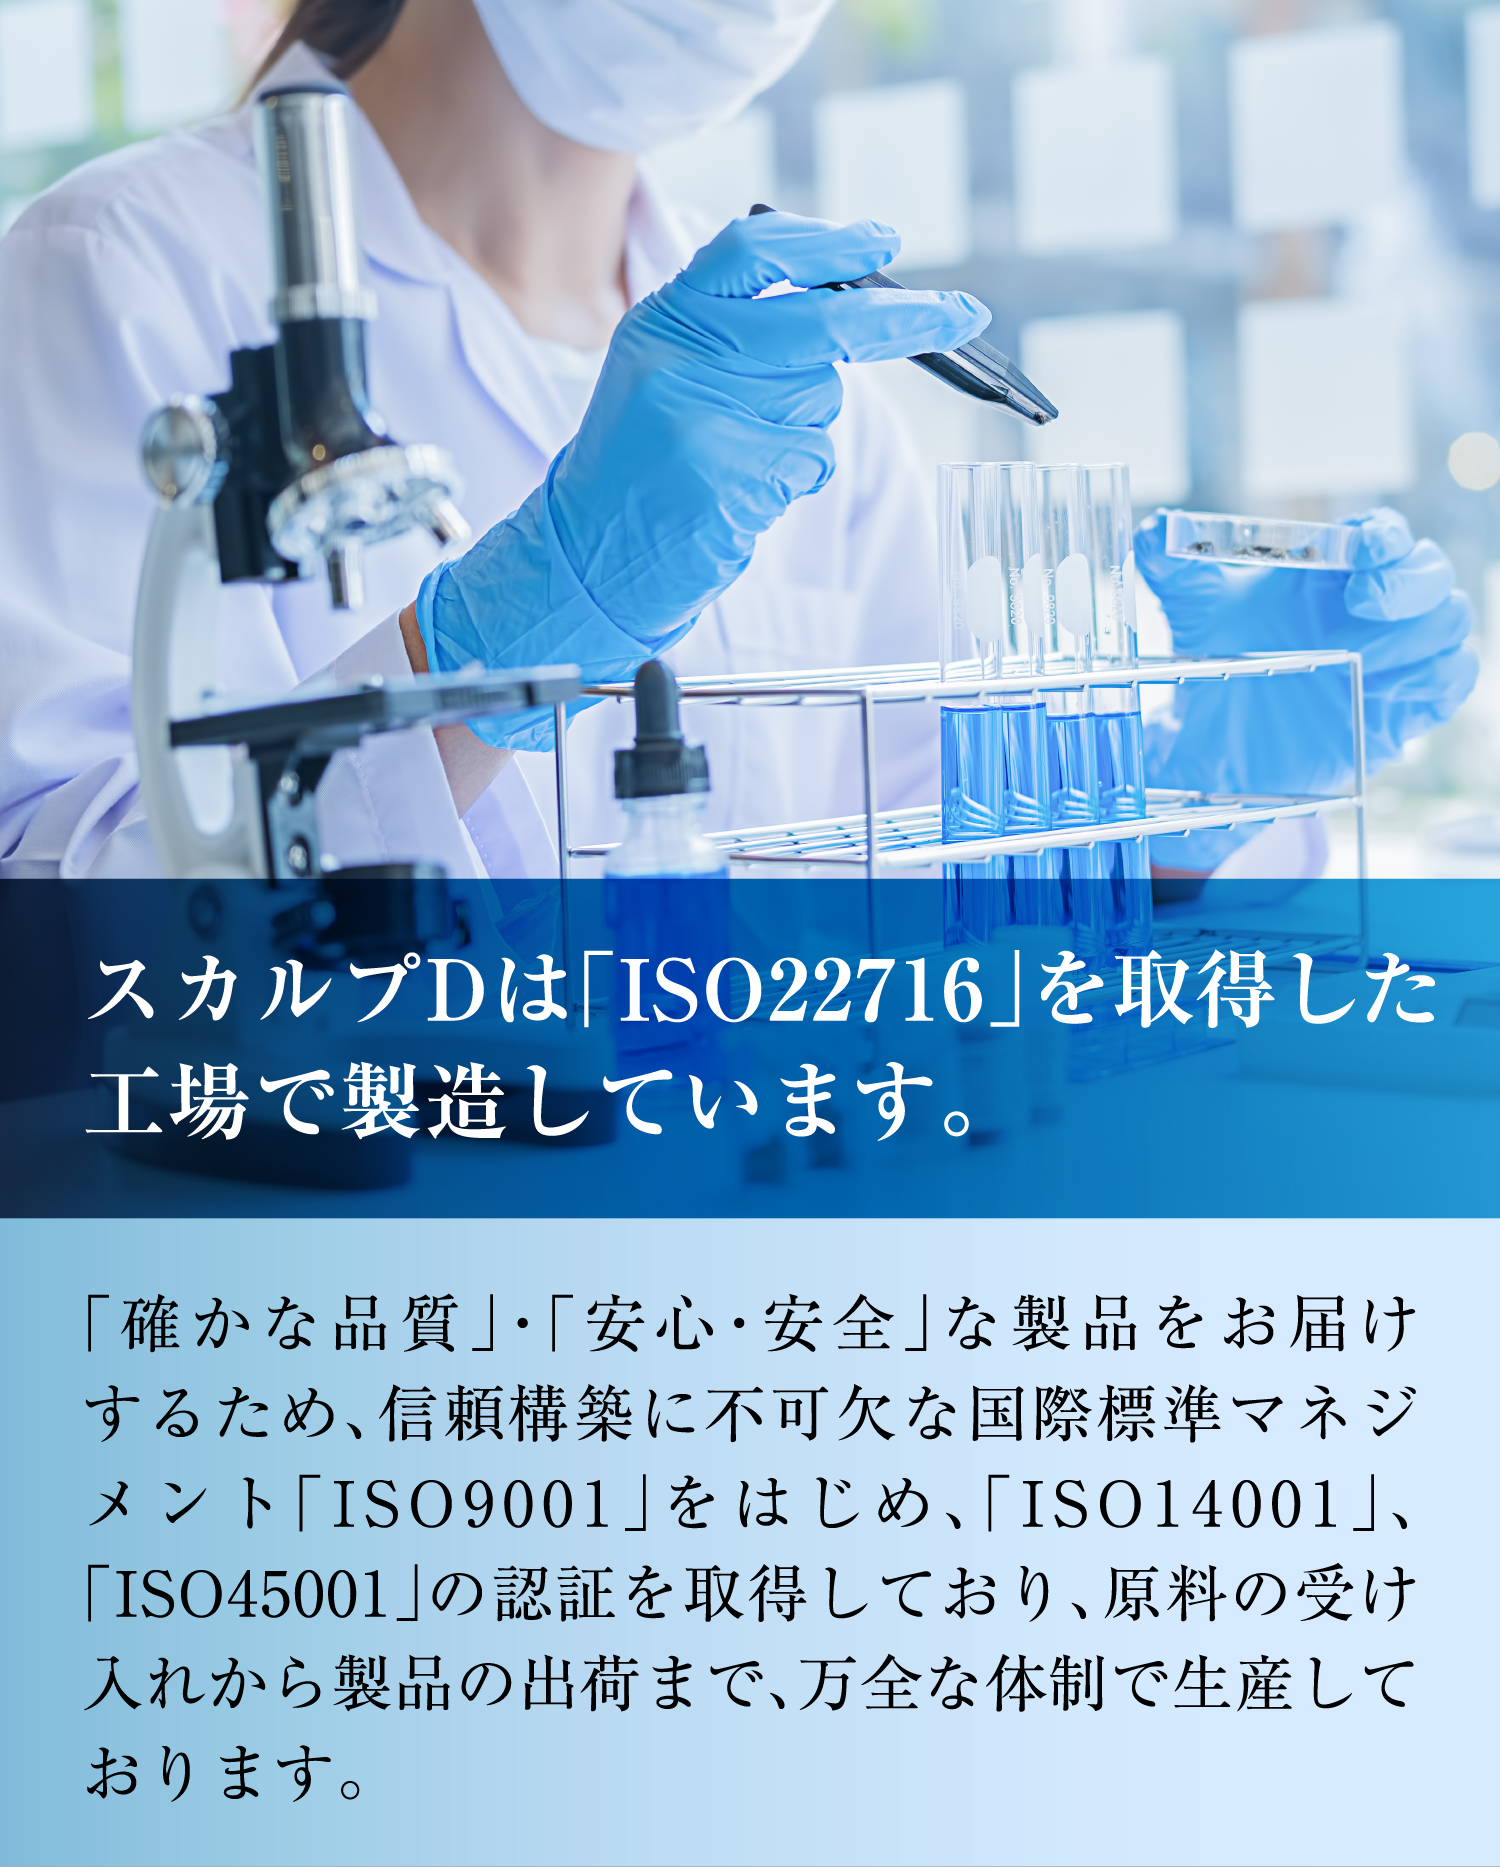 スカルプDの製造はすべての工場で「ISO22716」を認証してます。